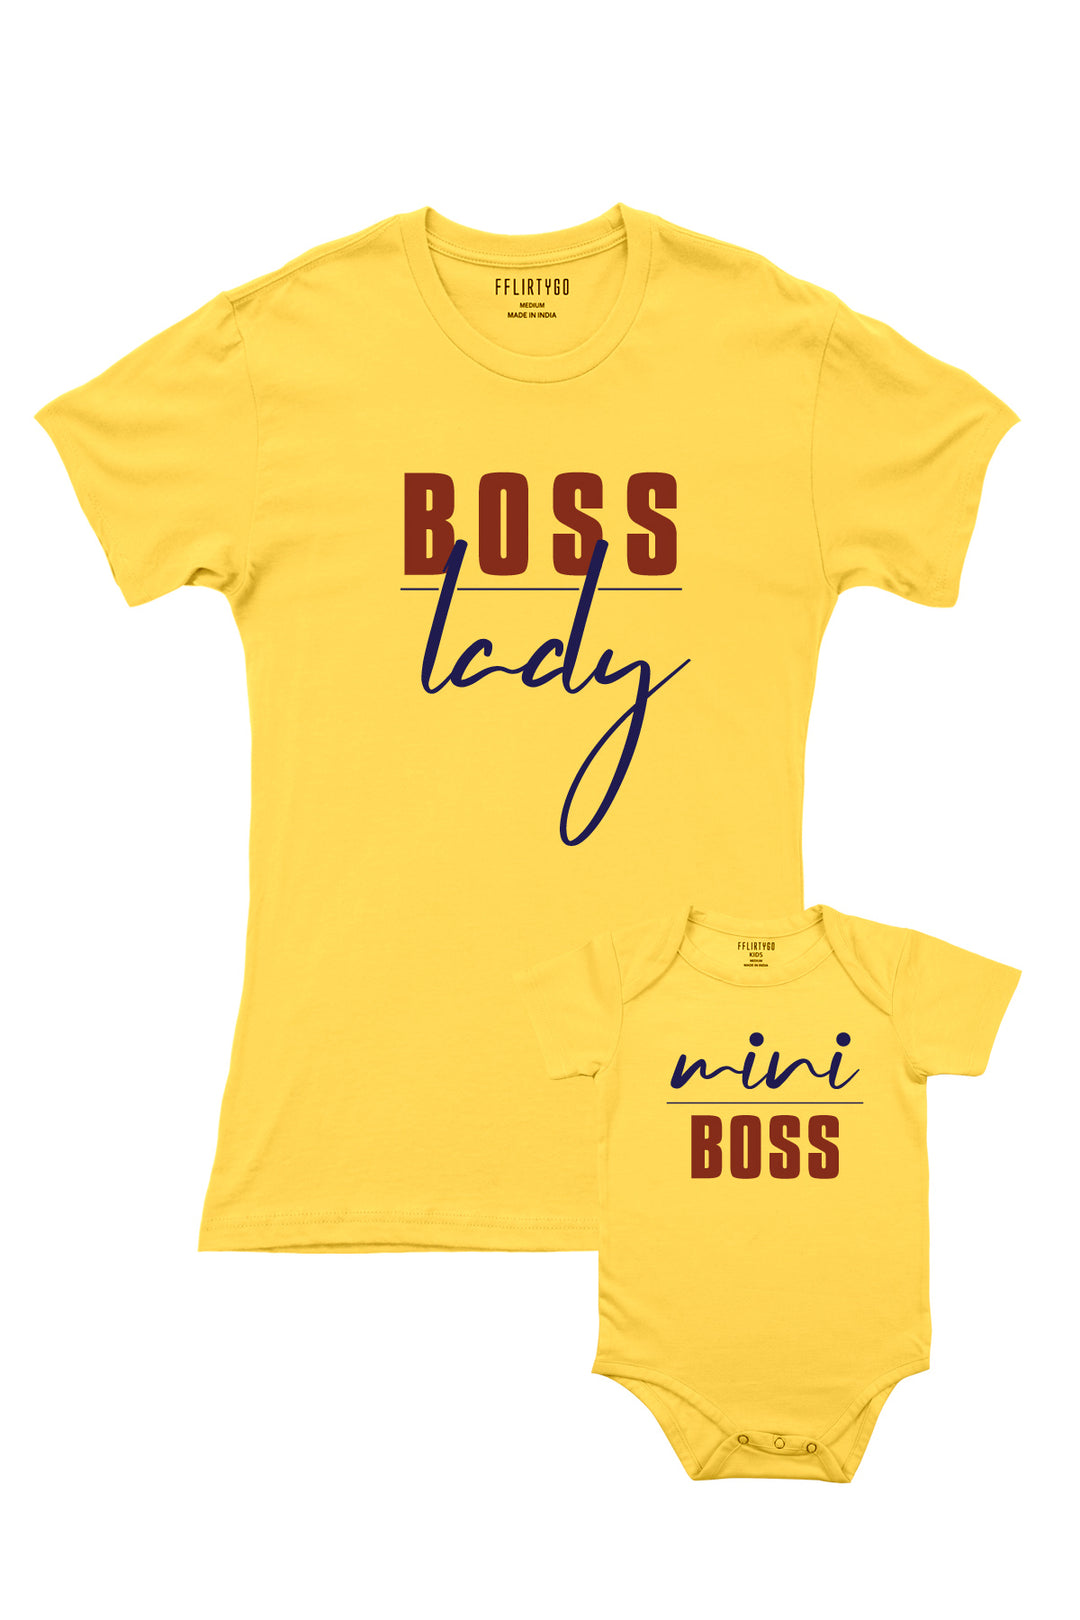 Boss Lady - Mini Boss